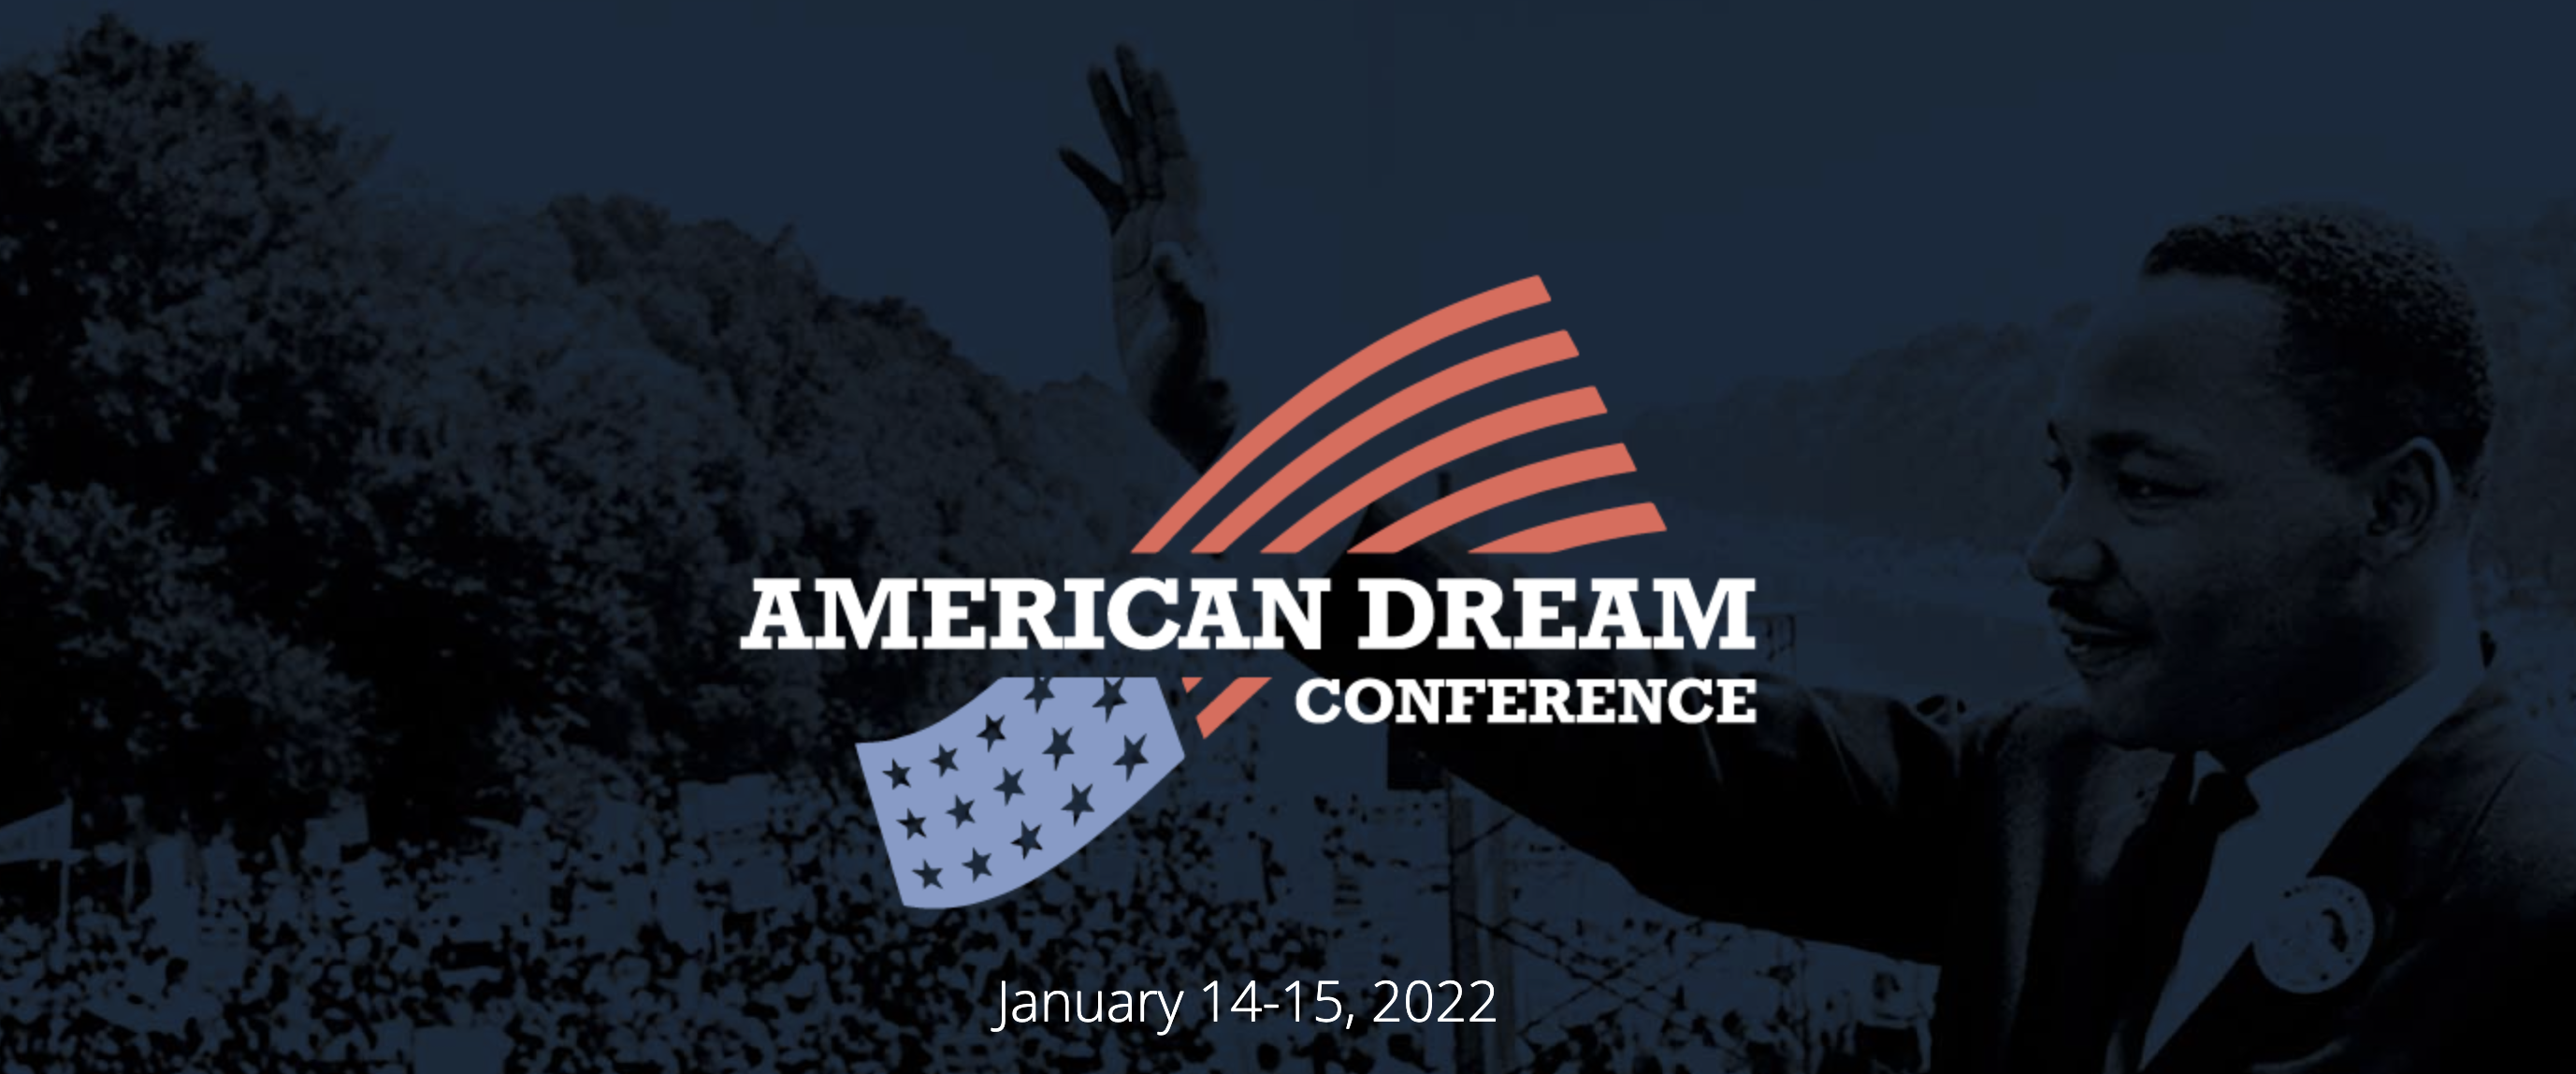 American Dream Conference